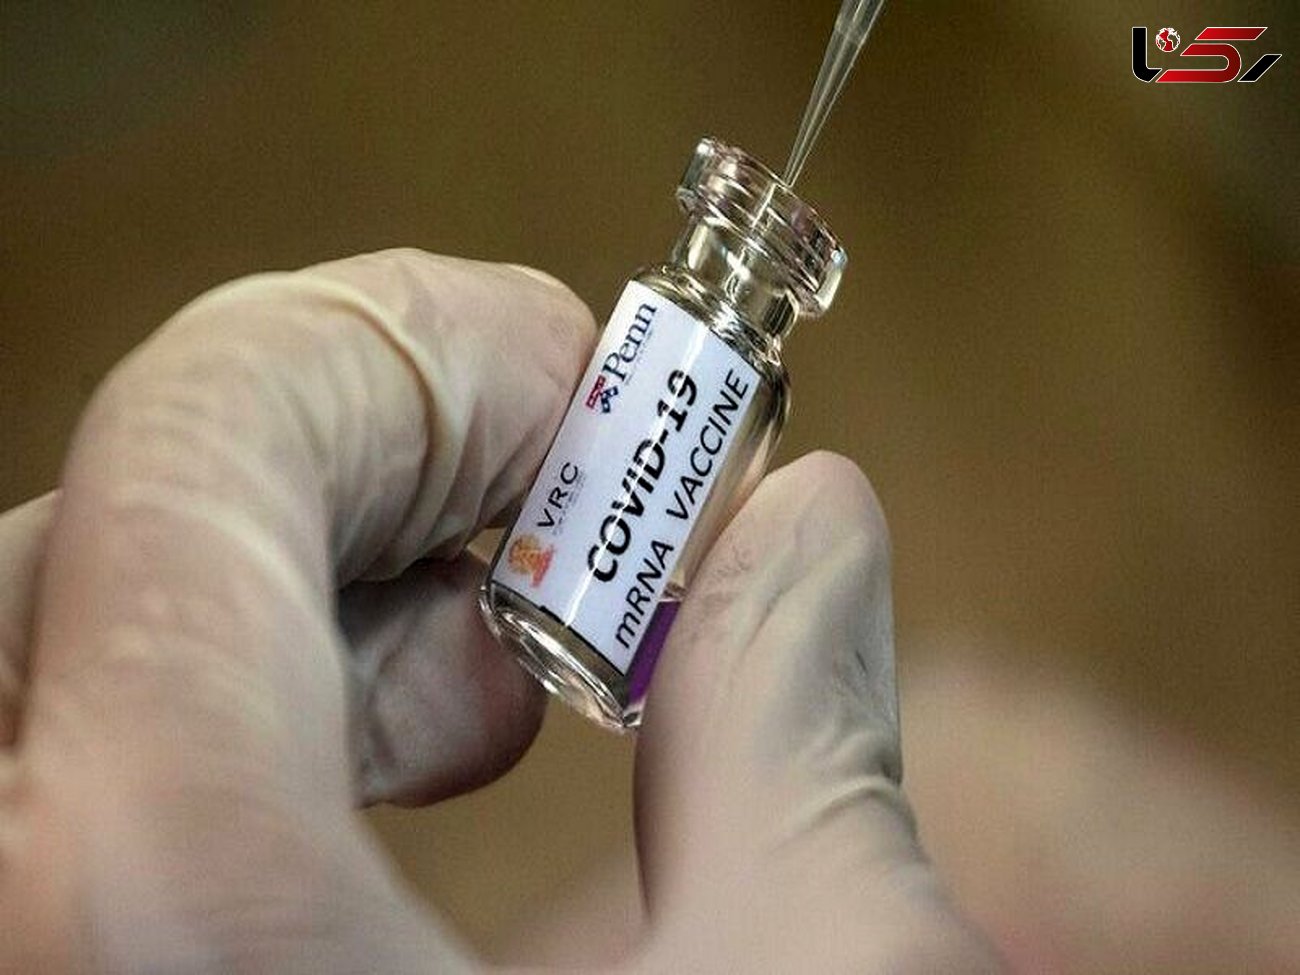 ساینس‌دیلی: واکسن جدید کرونا نتایج امیدوارکننده داشته است